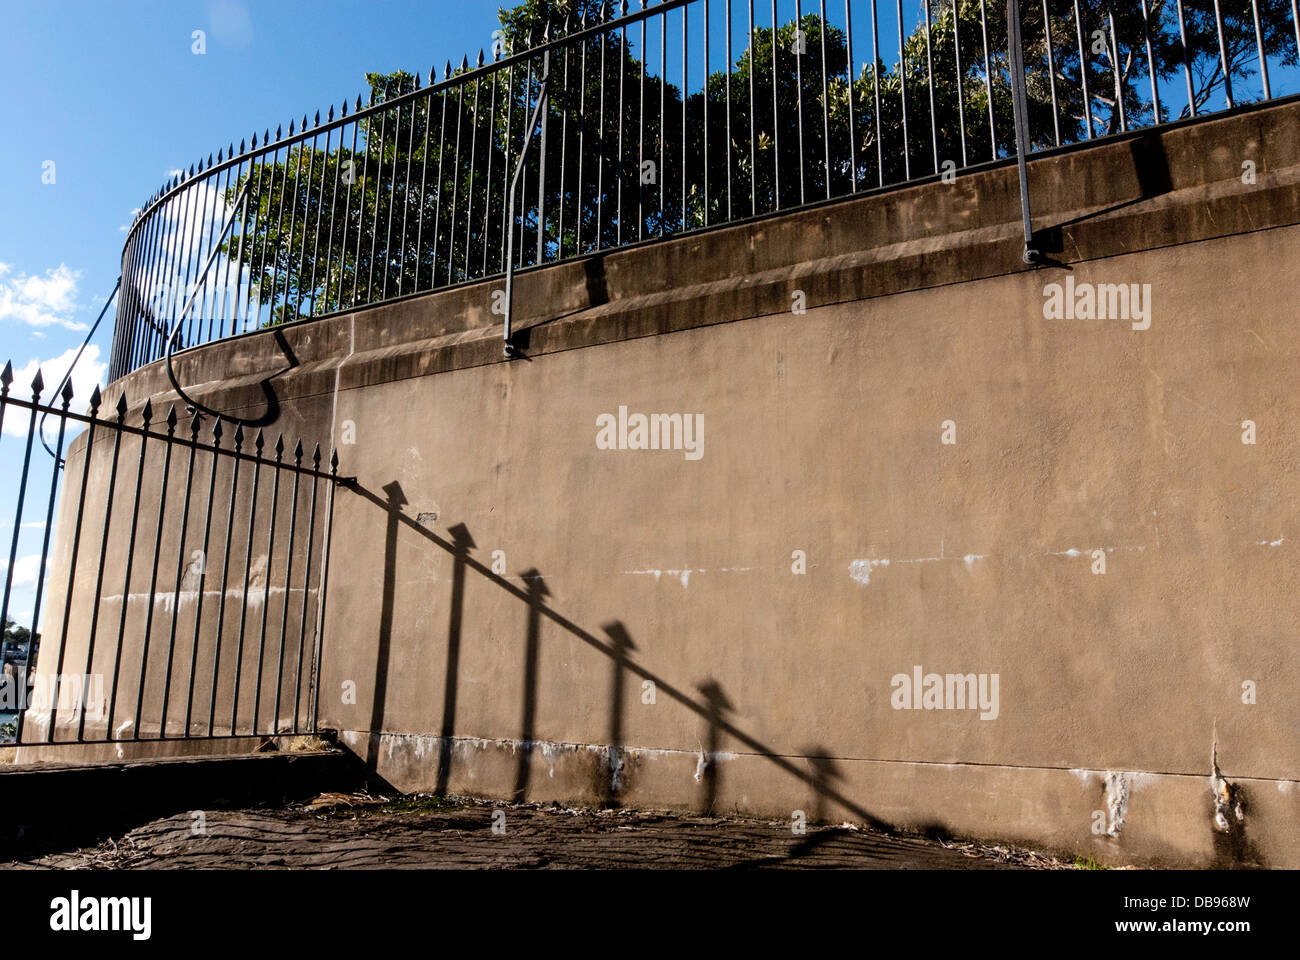 Vecchie ringhiere in metallo che gettano ombre sul muro, Pyrmont, Sydney, Australia Foto Stock